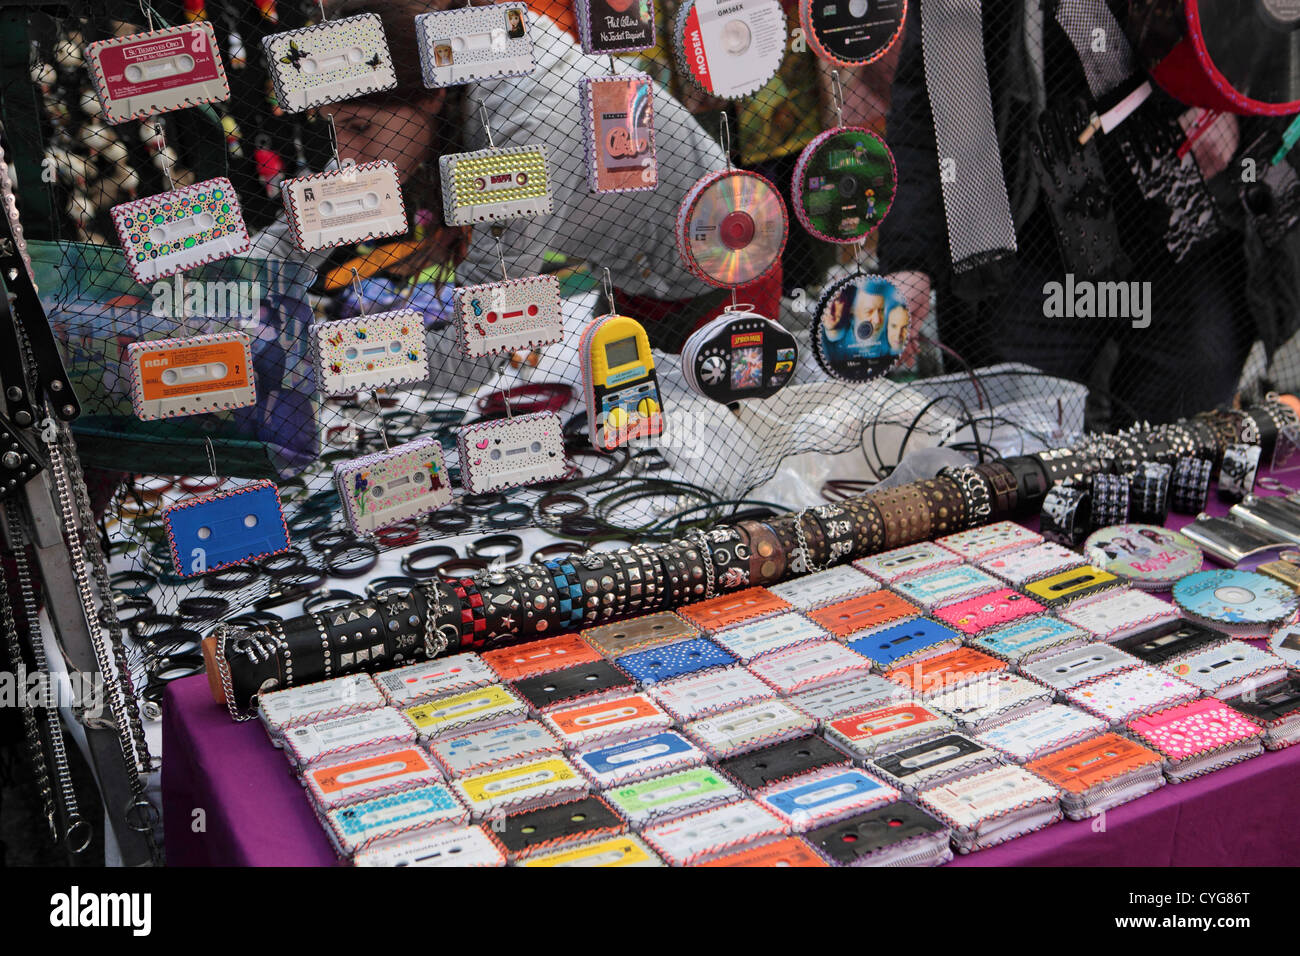 Novedad artículos hechos con cintas de cassette, bolsos y carteras, El Rastro, el mercadillo dominical cala, Madrid, España. Foto de stock